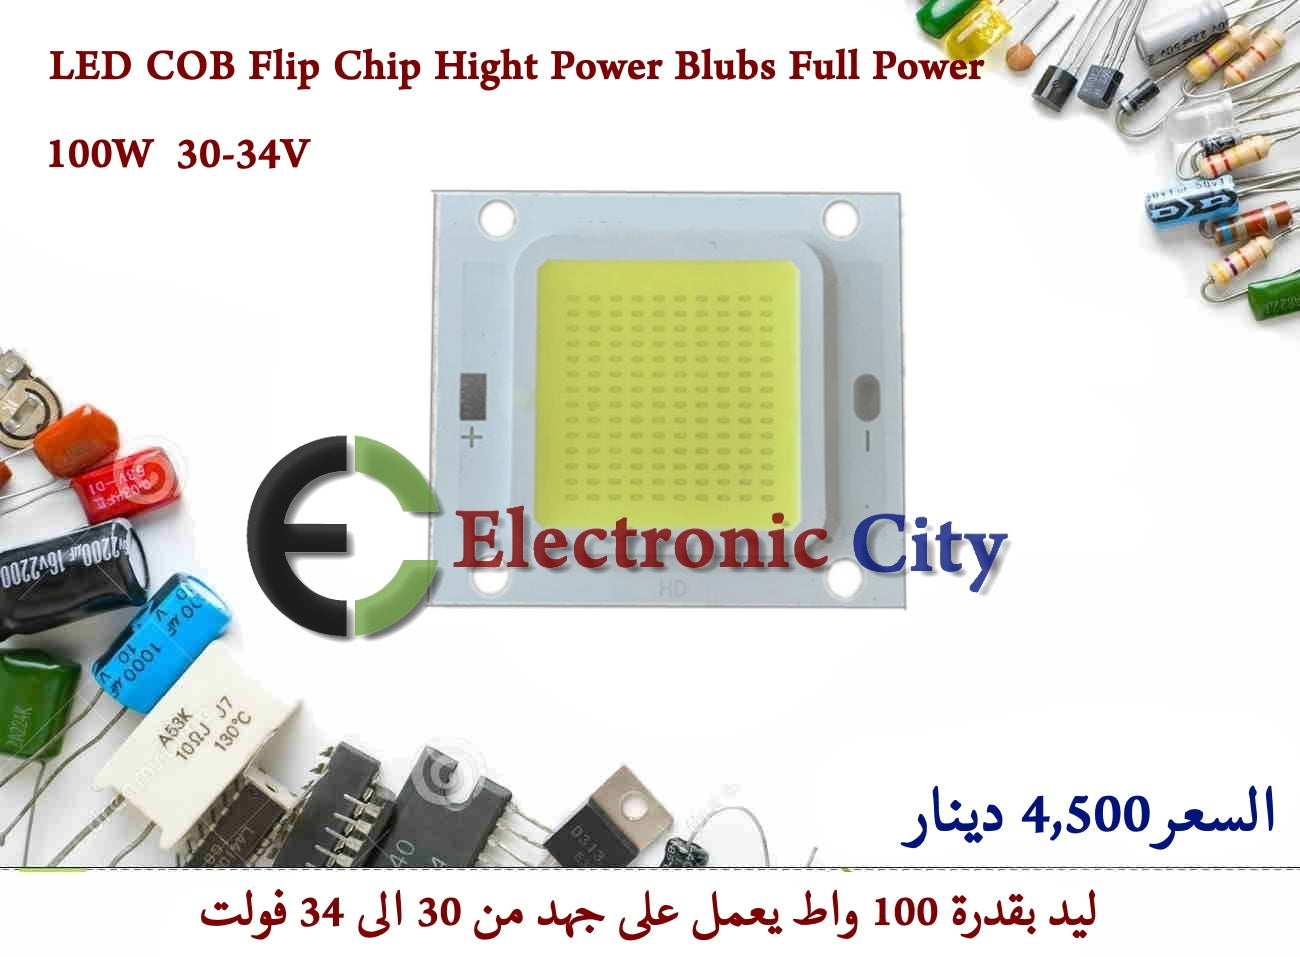 LED COB Flip Chip Hight Power Blubs Full Power 100W 30-34V